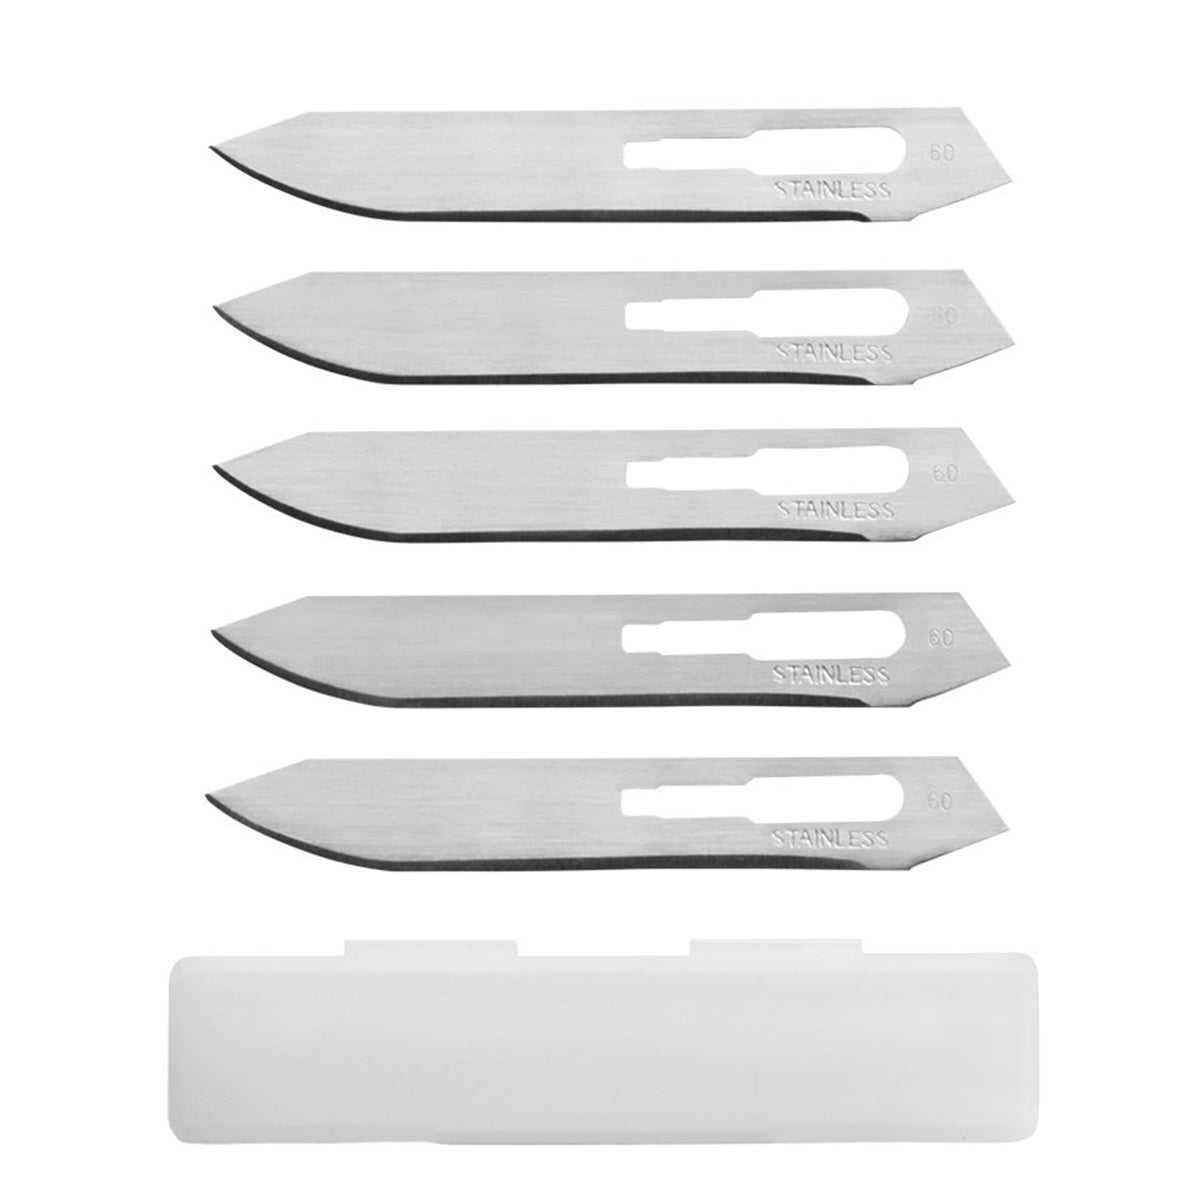 Gerber Vital Pocket Folder Replaceable Blade Knife by Gerber | Gear - goHUNT Shop